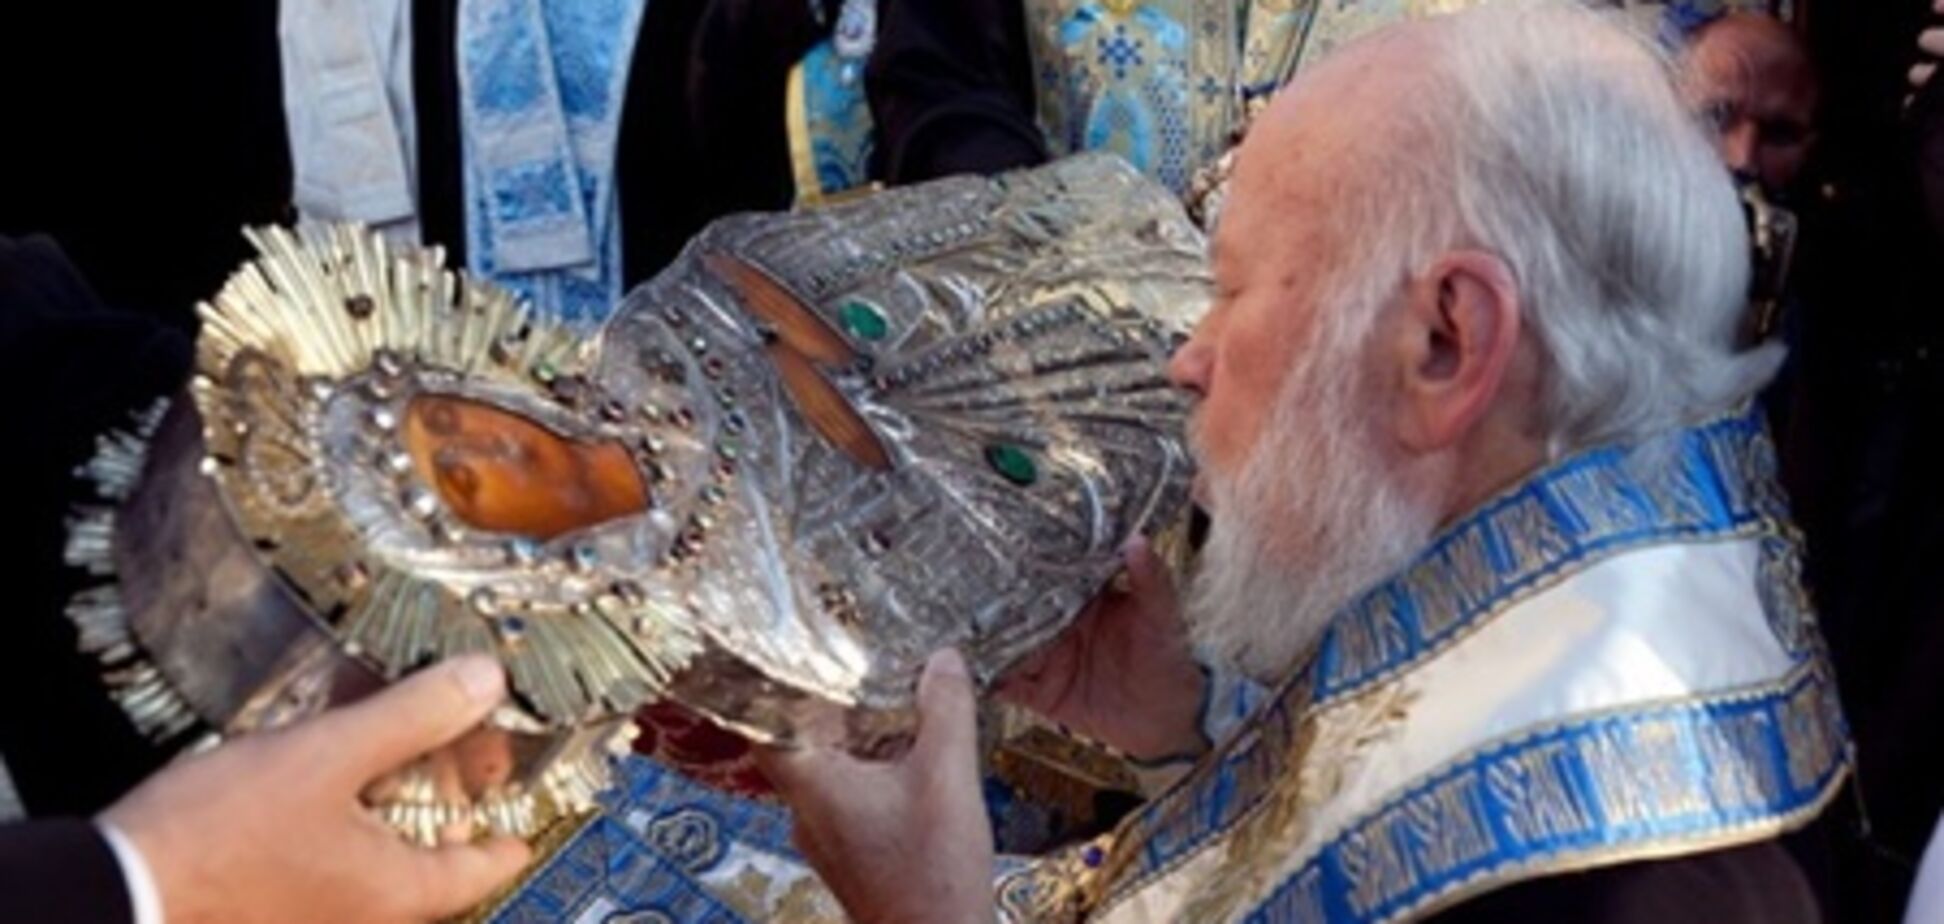 Плащаница Пресвятой Богородицы прибыла в Украину